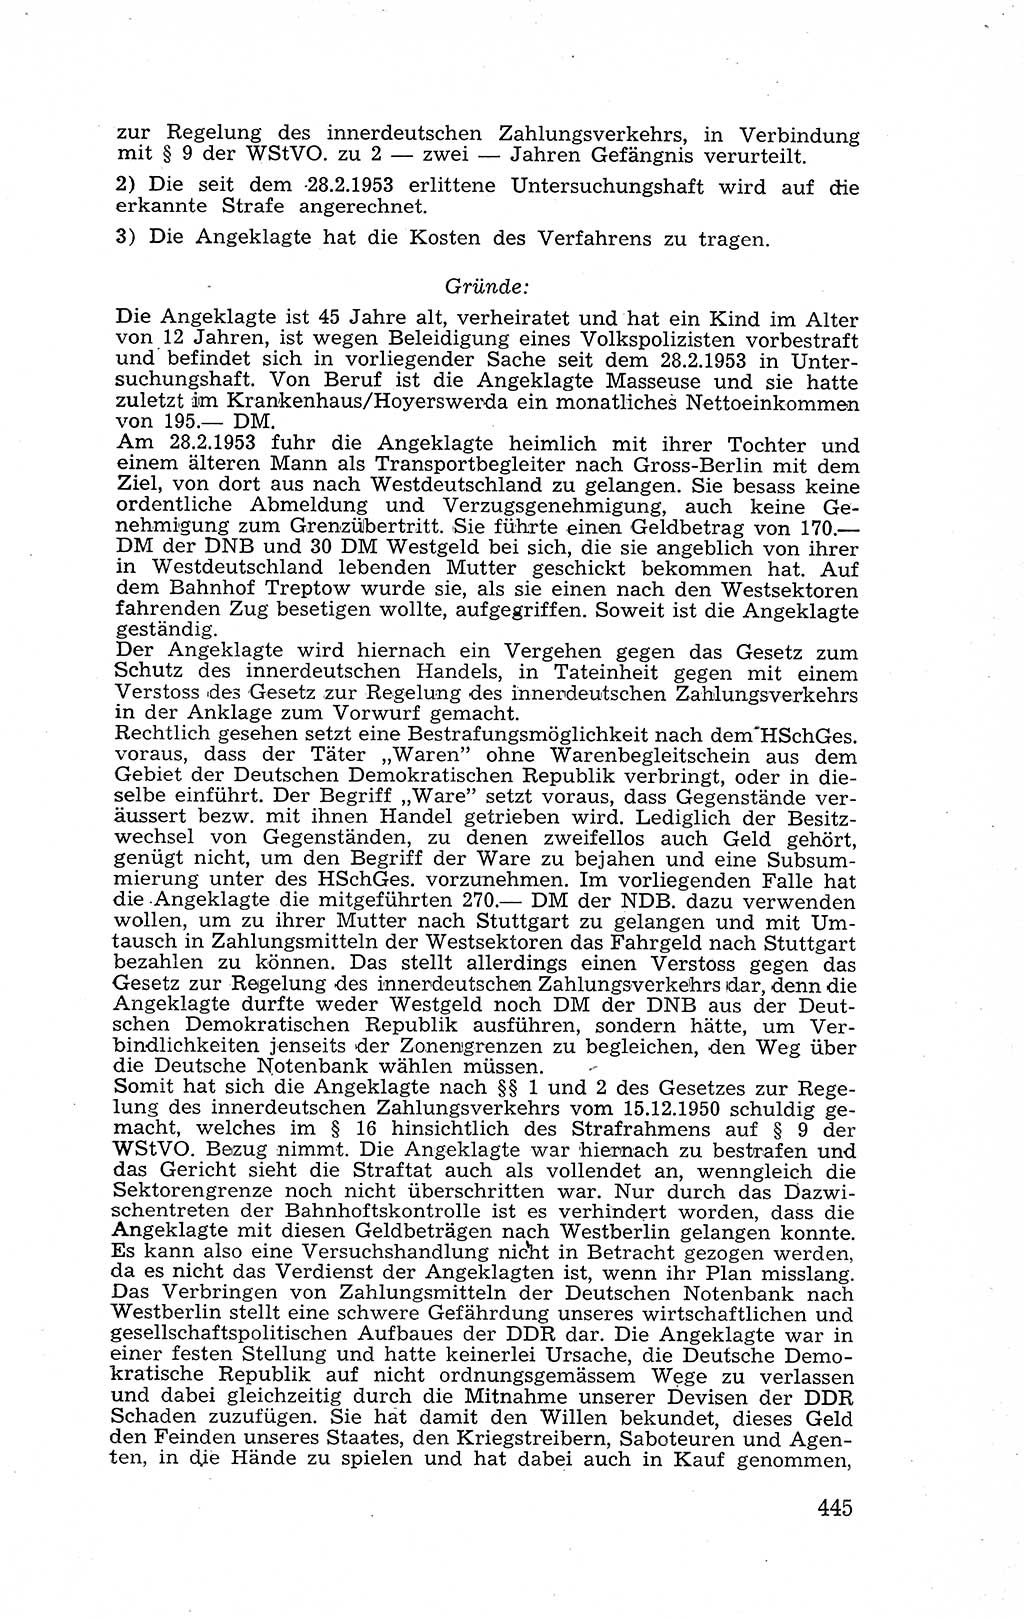 Recht in Fesseln, Dokumente, Internationale Juristen-Kommission [Bundesrepublik Deutschland (BRD)] 1955, Seite 445 (R. Dok. IJK BRD 1955, S. 445)